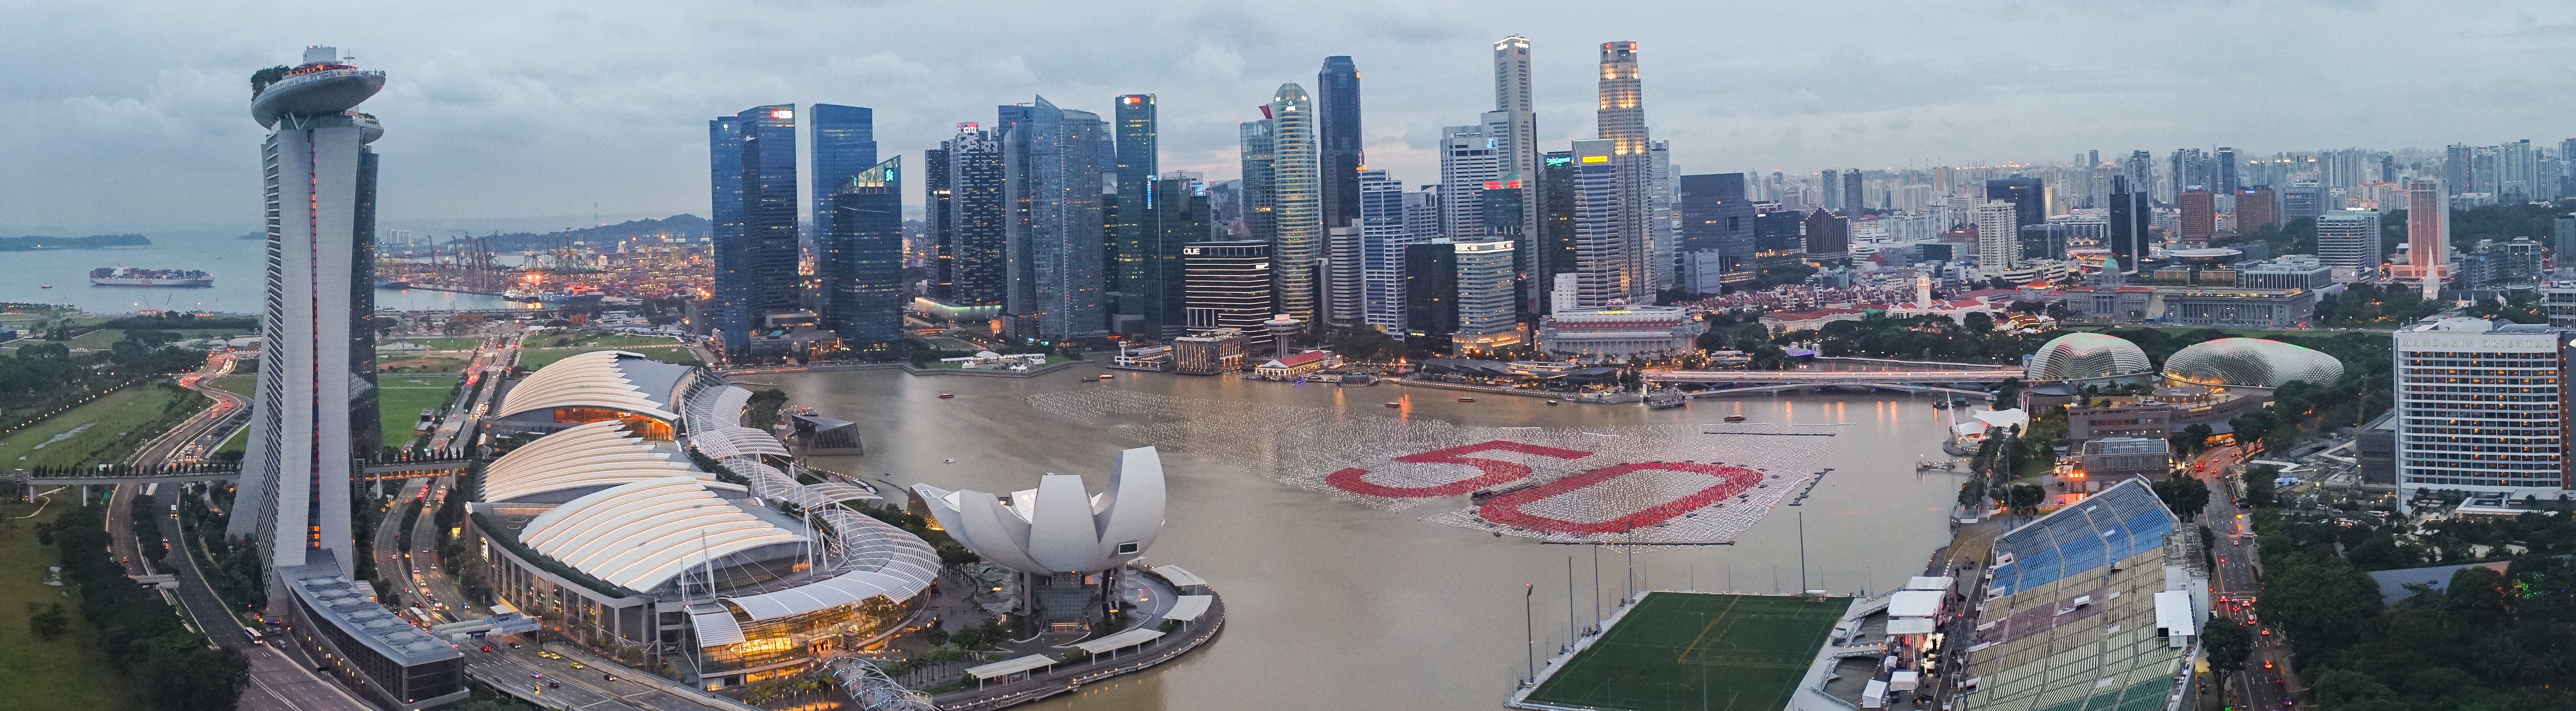 Скачать обои бесплатно Города, Панорама, Сингапур, Сделано Человеком картинка на рабочий стол ПК